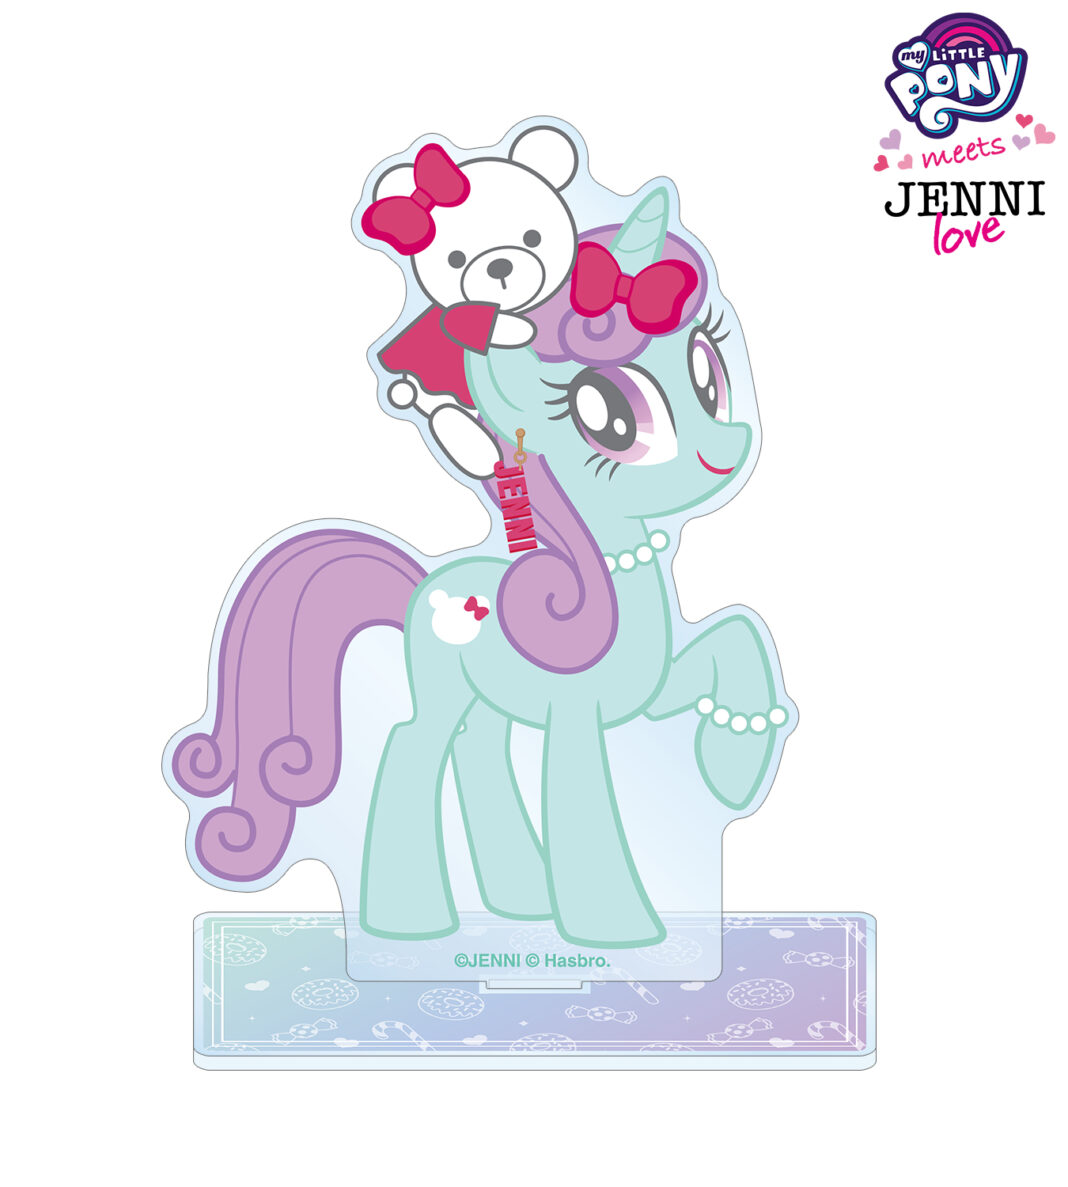 『My Little Pony meets JENNI love』のBIGアクリルスタンド、1ポケットパスケースの受注を開始！！アニメ・漫画のオリジナルグッズを販売する「AMNIBUS」にてのメイン画像